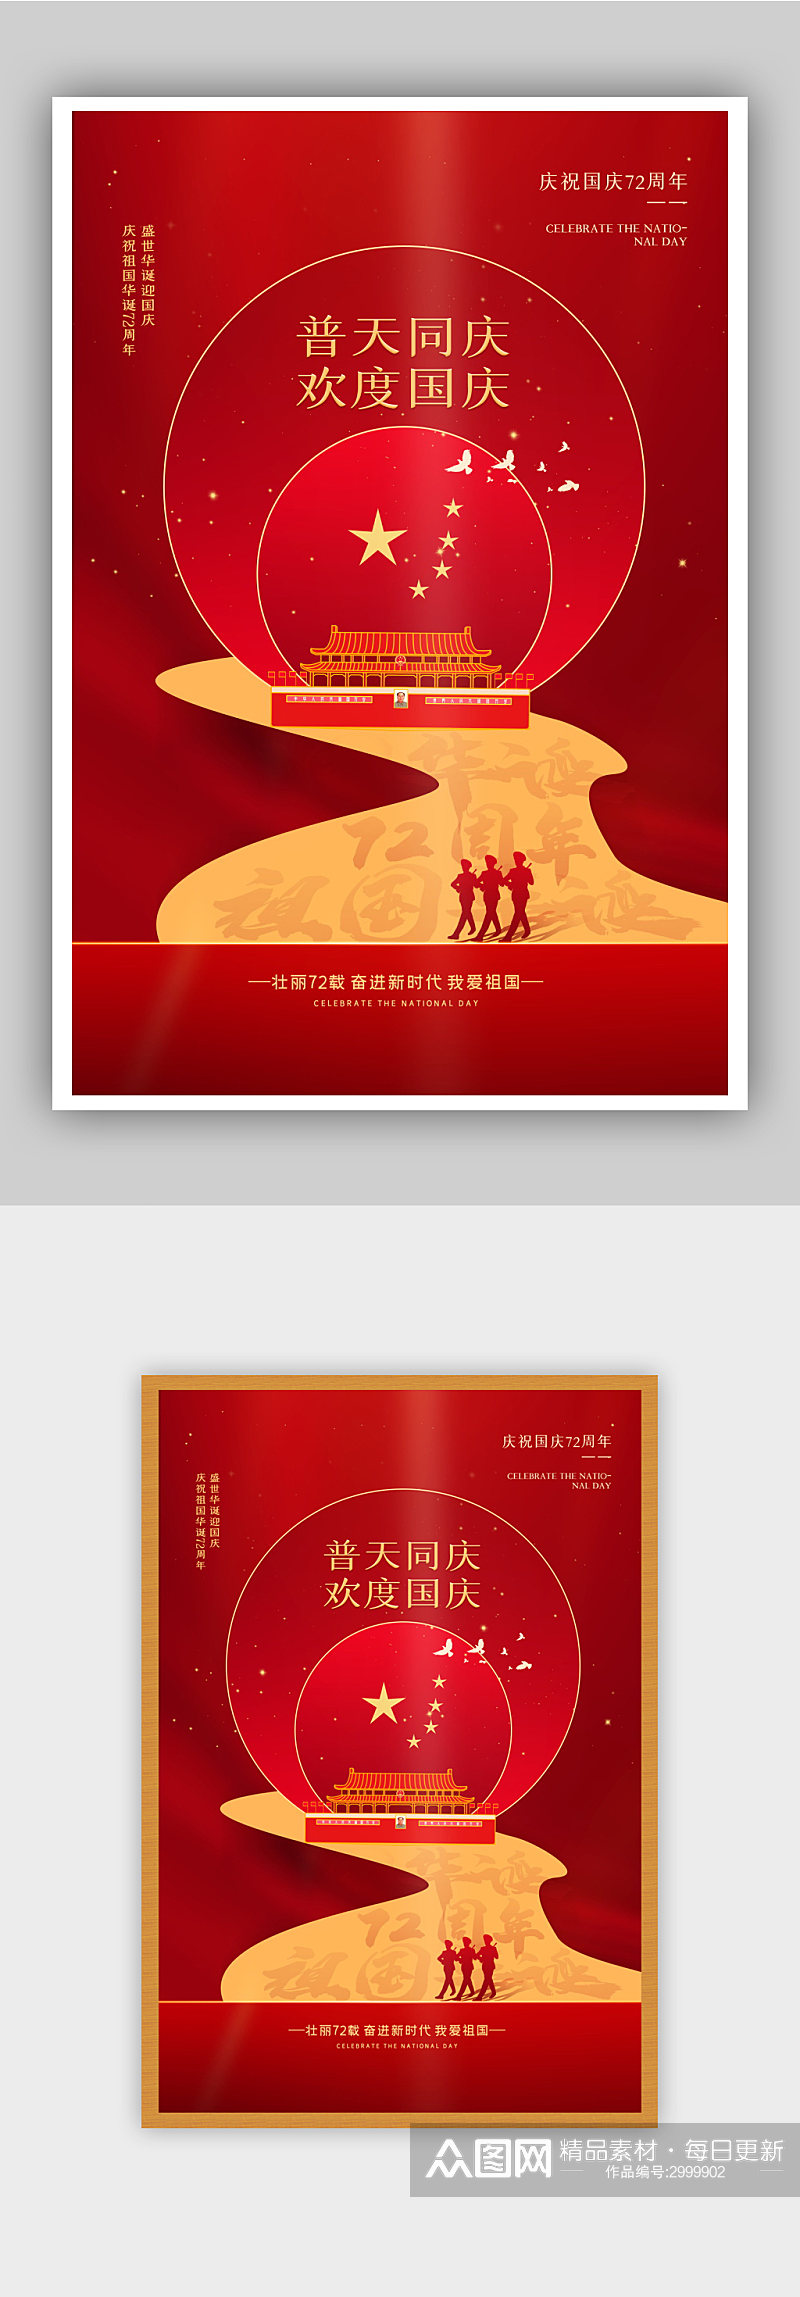 红色创意大气国庆节主题海报素材